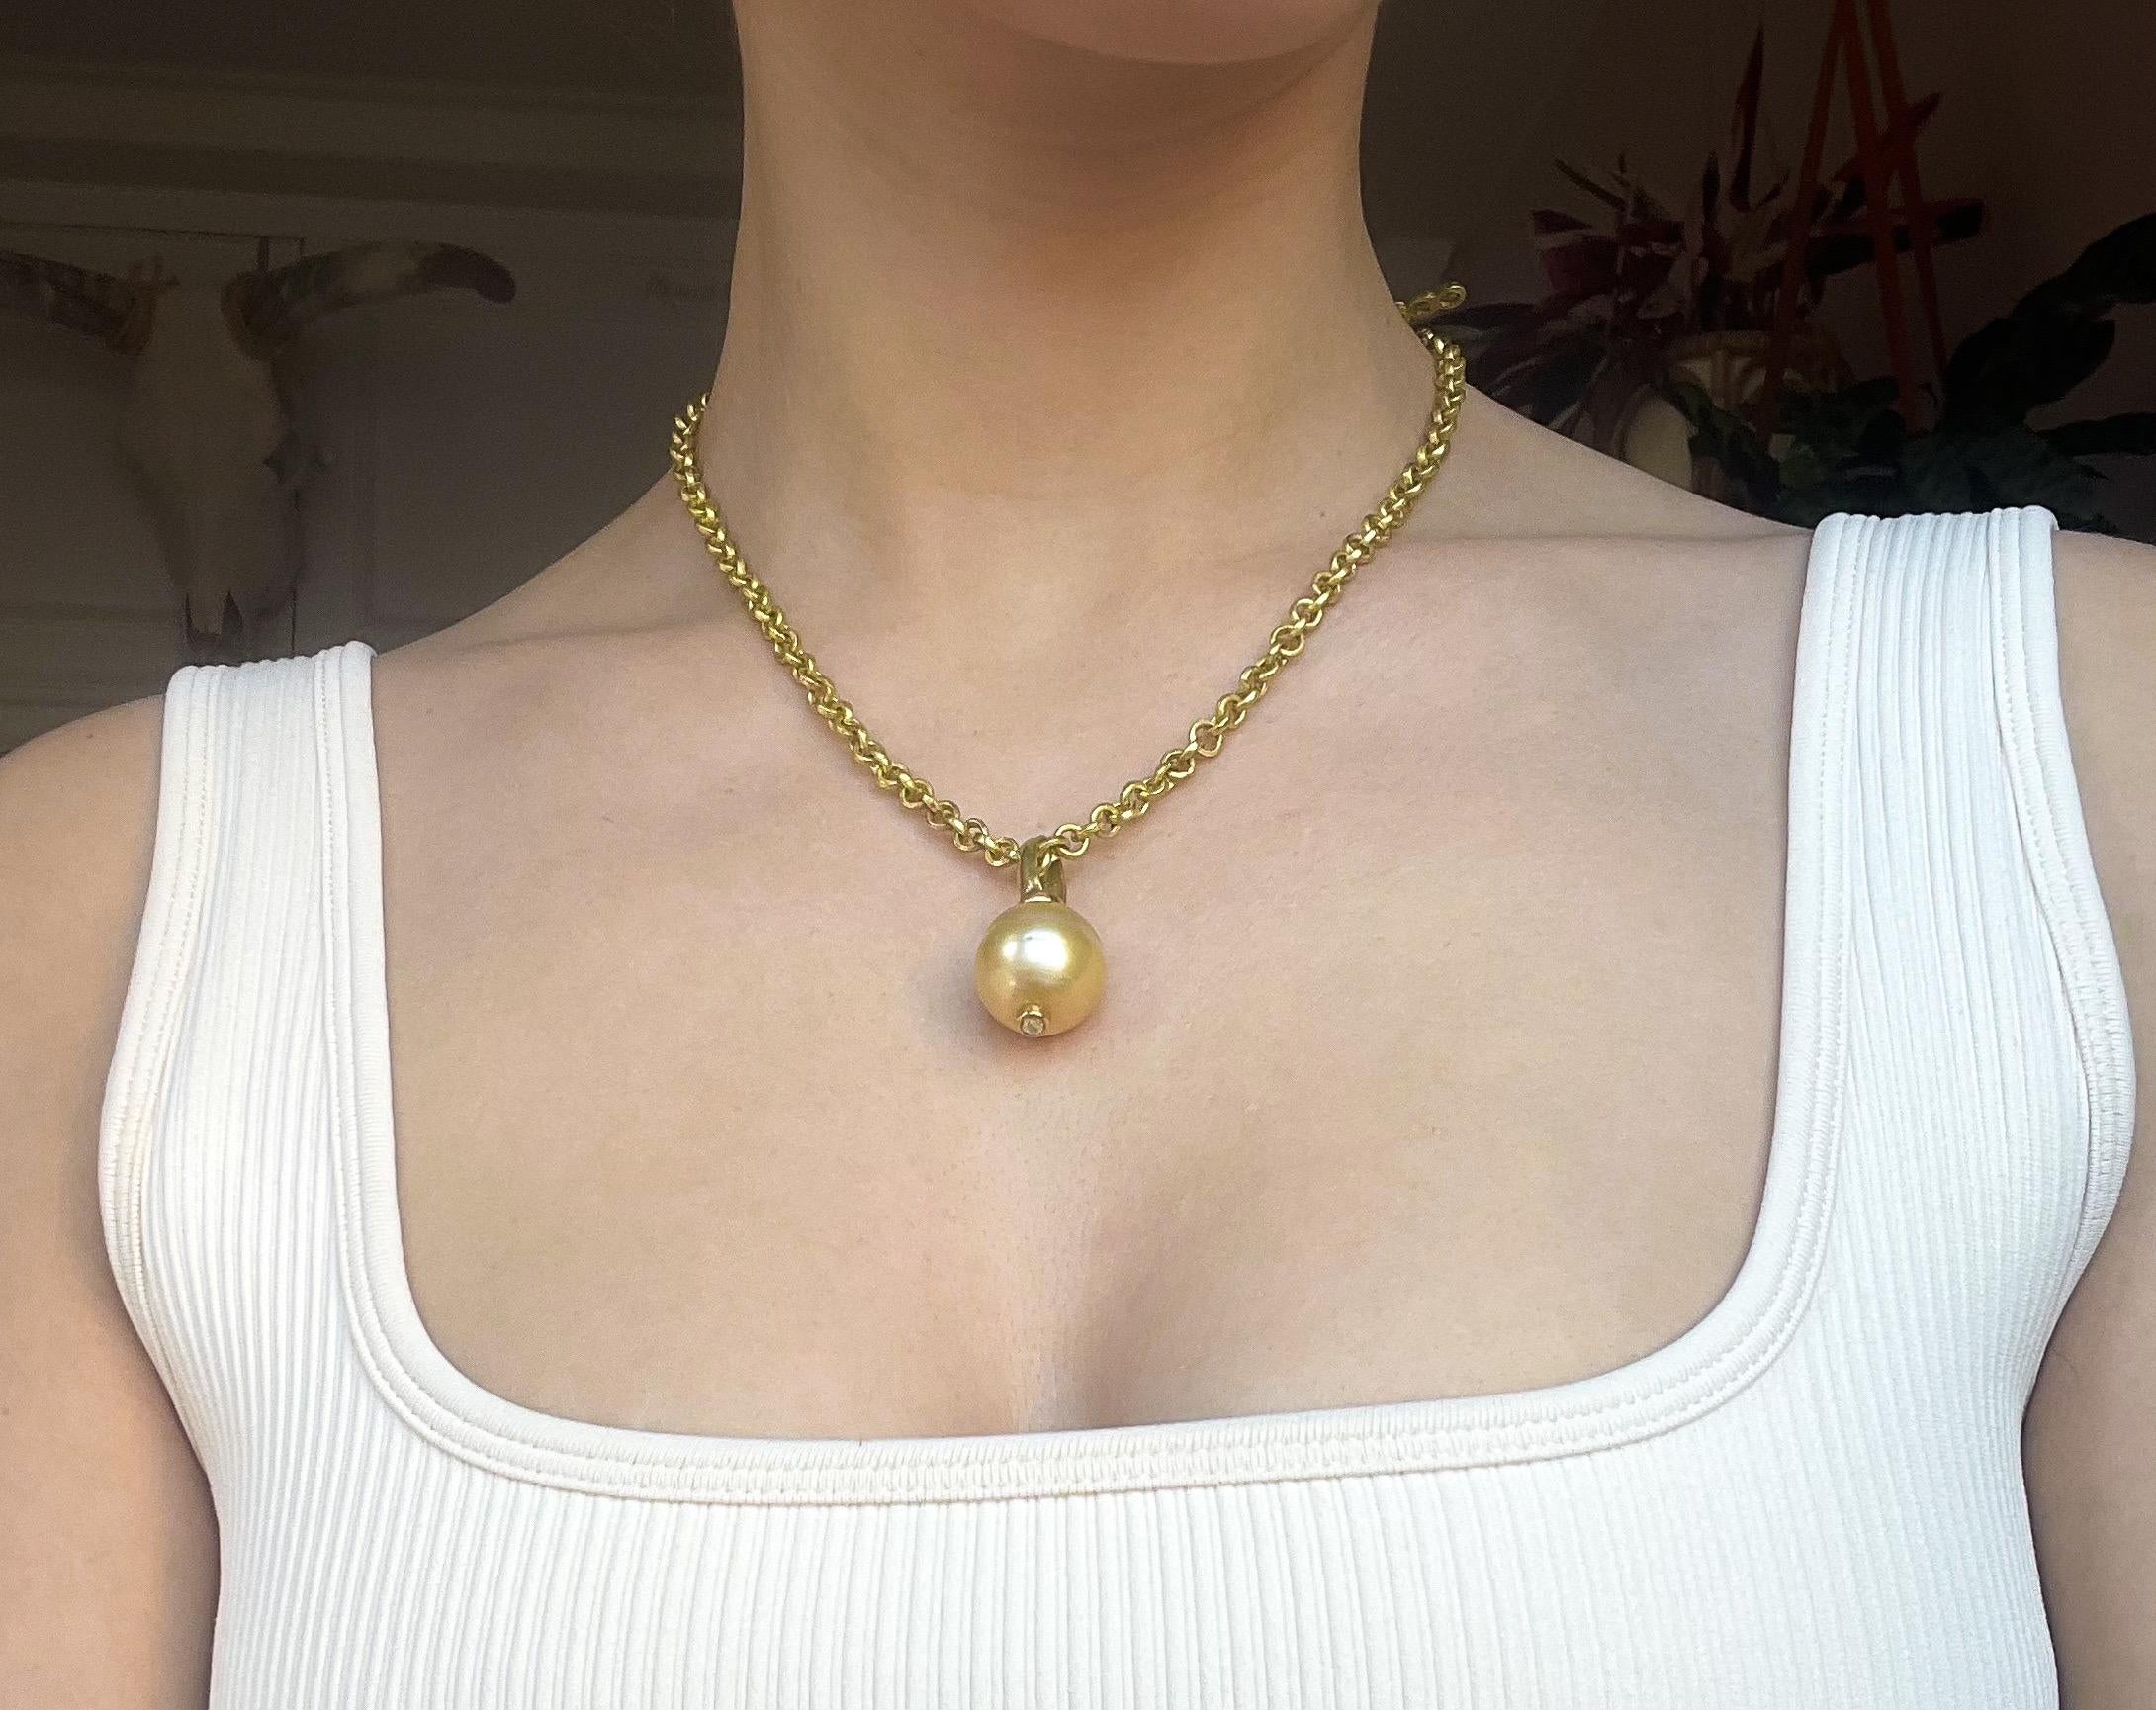 necklace enhancer clasp